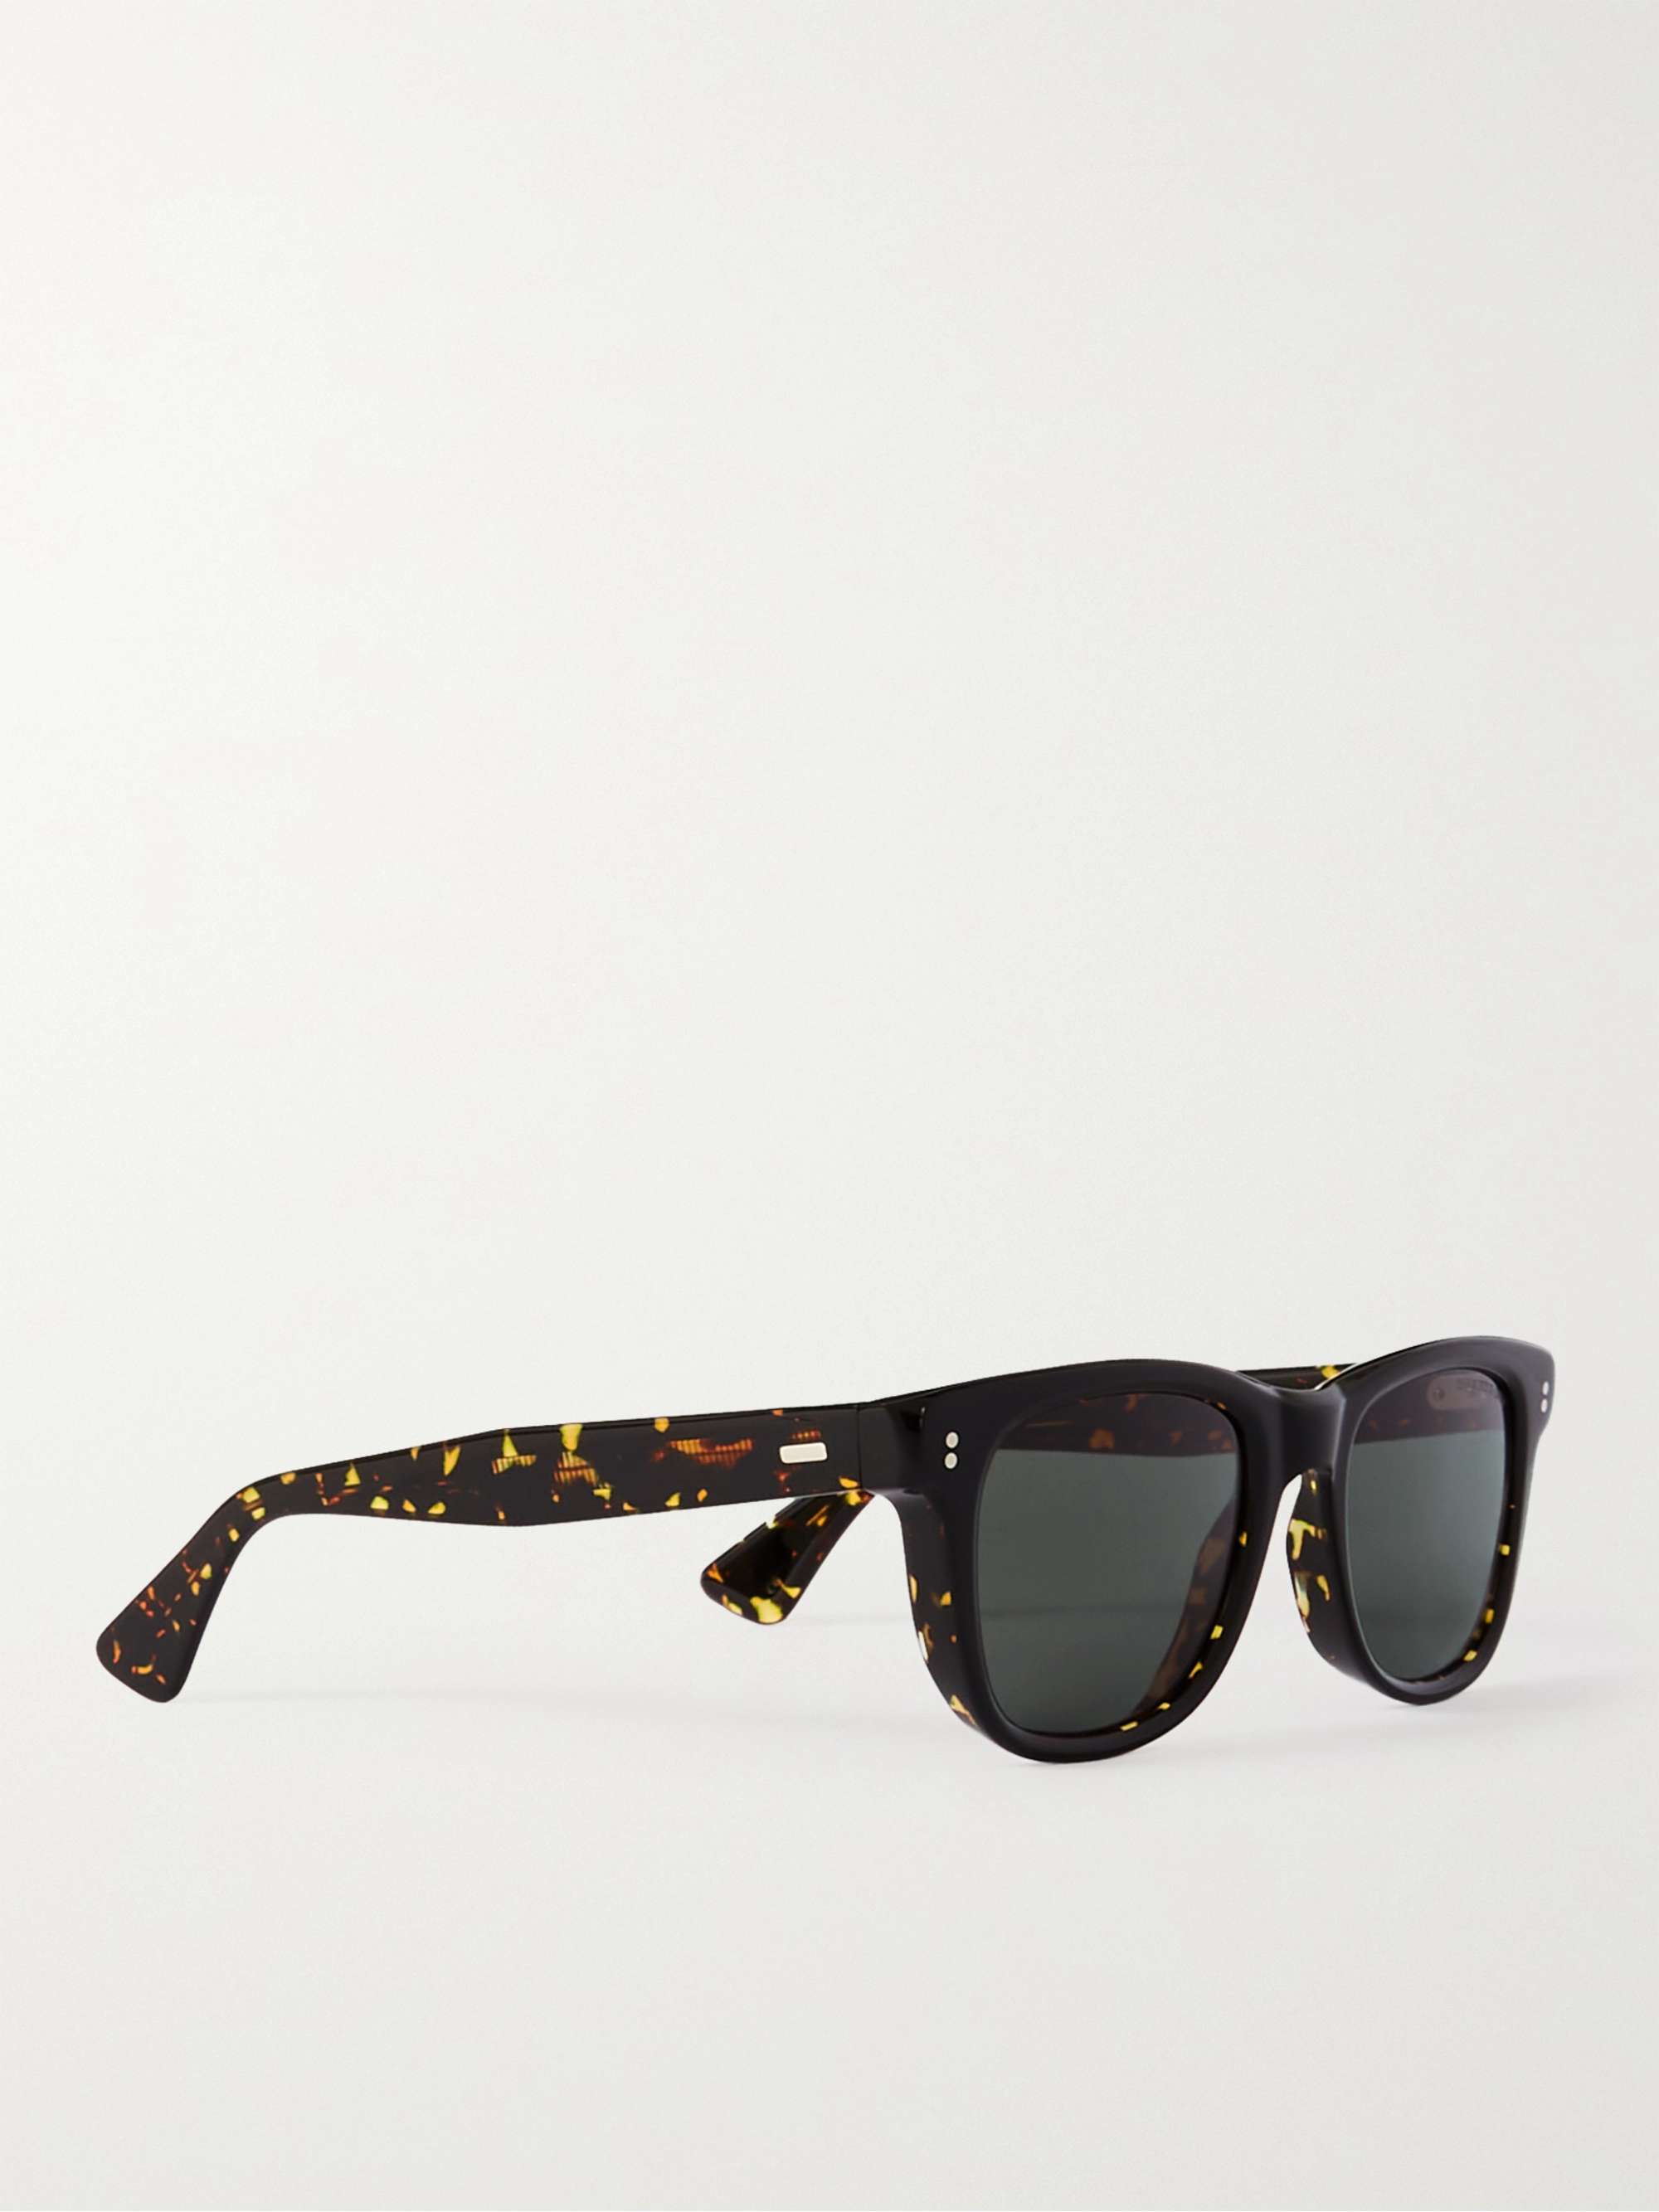 CUTLER AND GROSS 9101 D-Frame Acetate Sunglasses